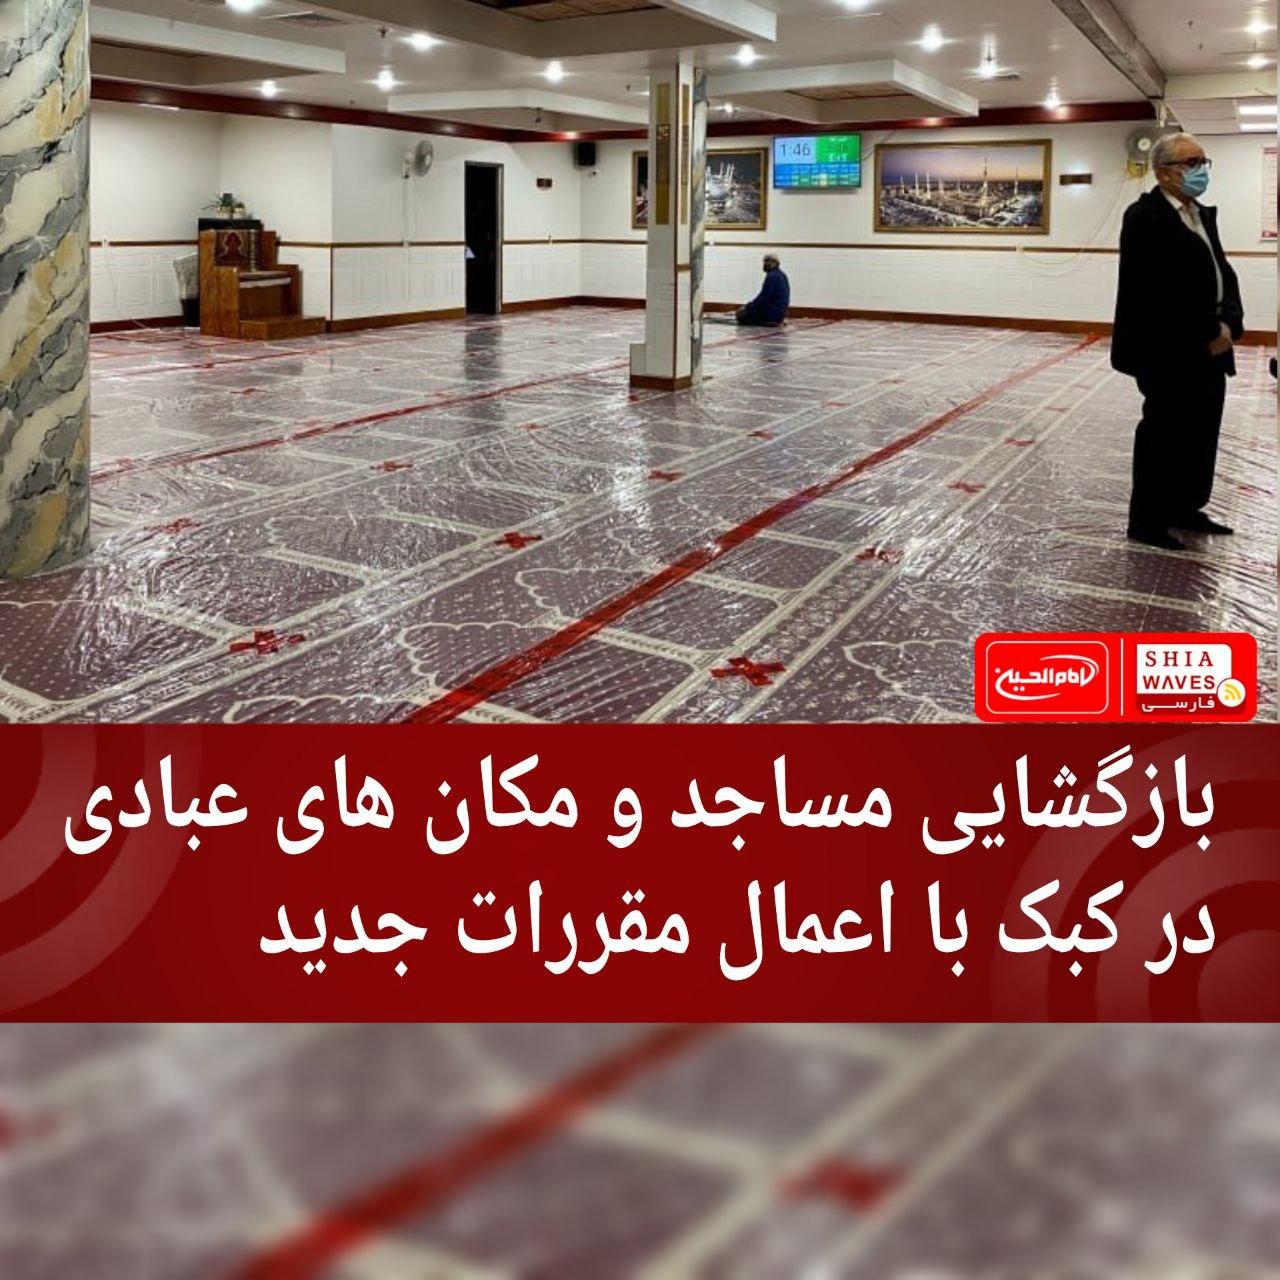 تصویر بازگشایی مساجد و مکان های عبادی در کبک با اعمال مقررات جدید